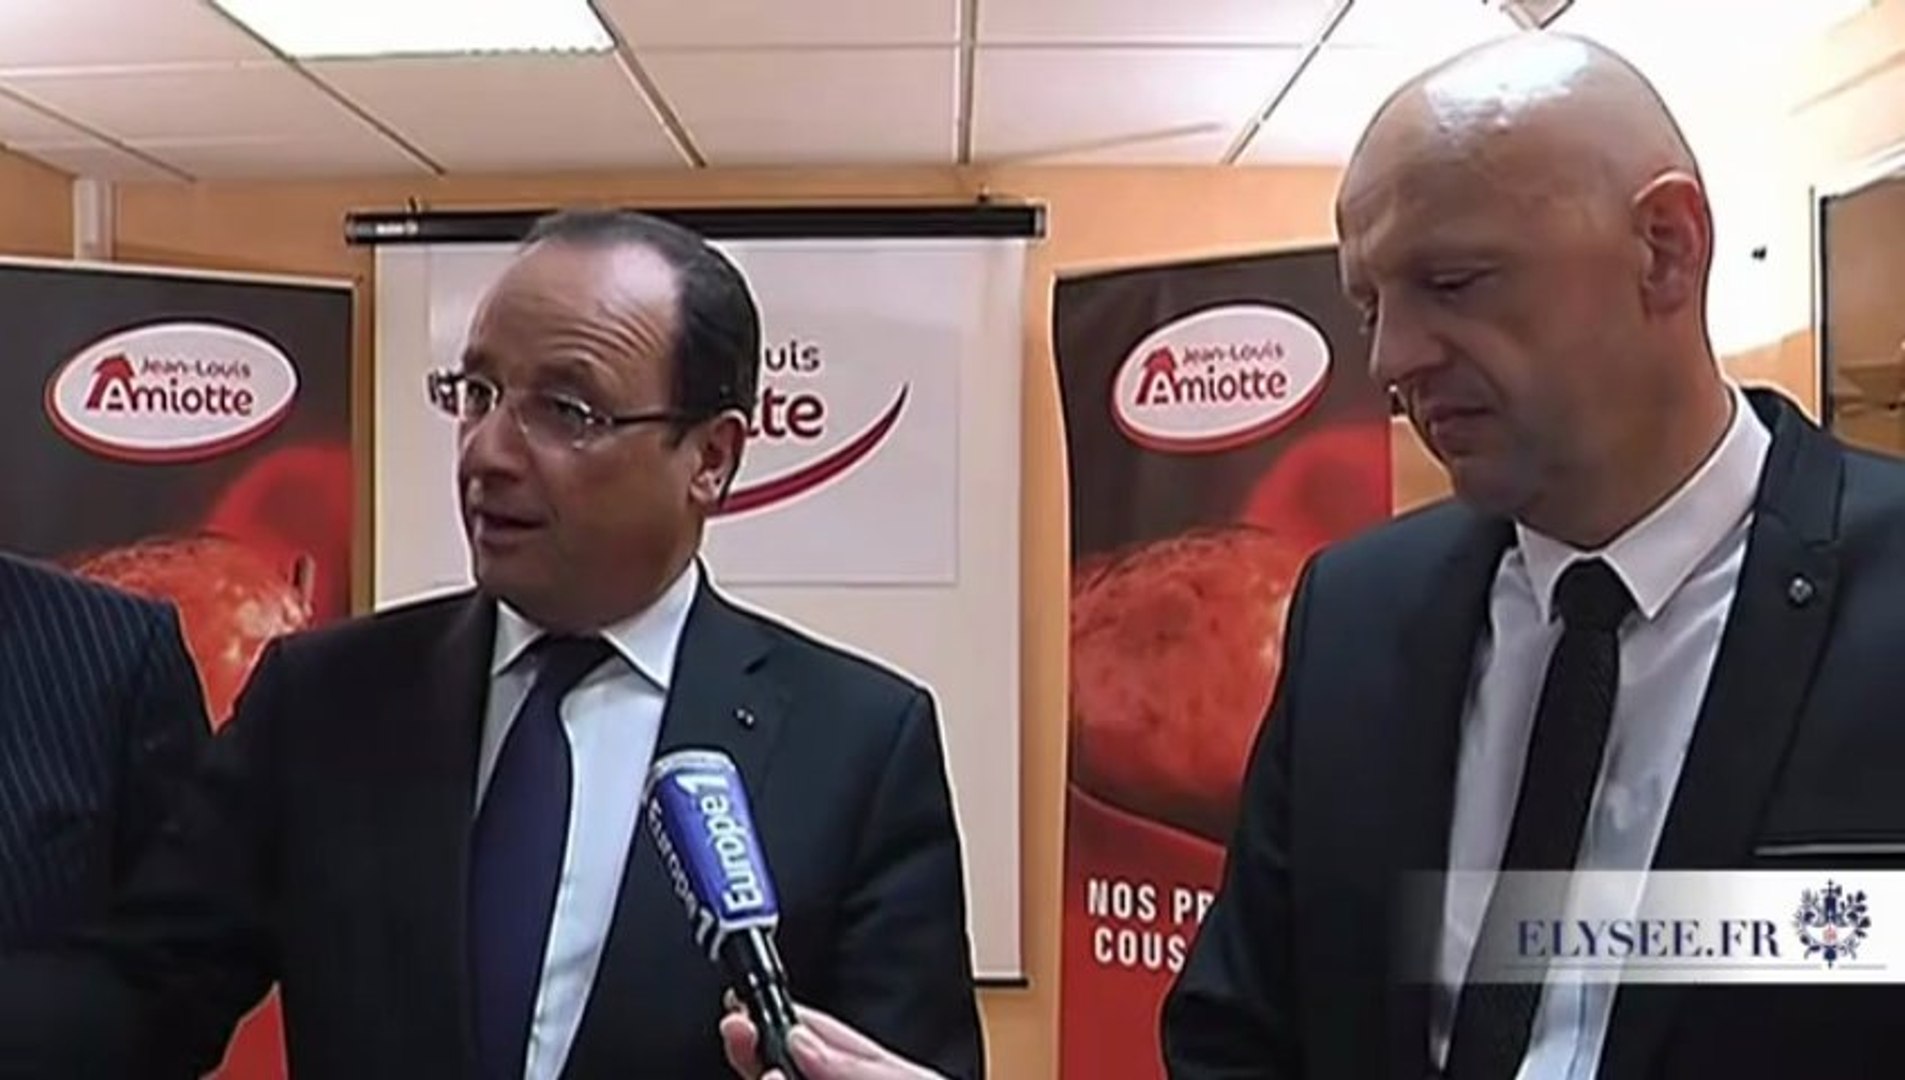 Allocution du président lors de la visite de l'entreprise Jean-Louis Amiotte  à Avoudrey - Vidéo Dailymotion